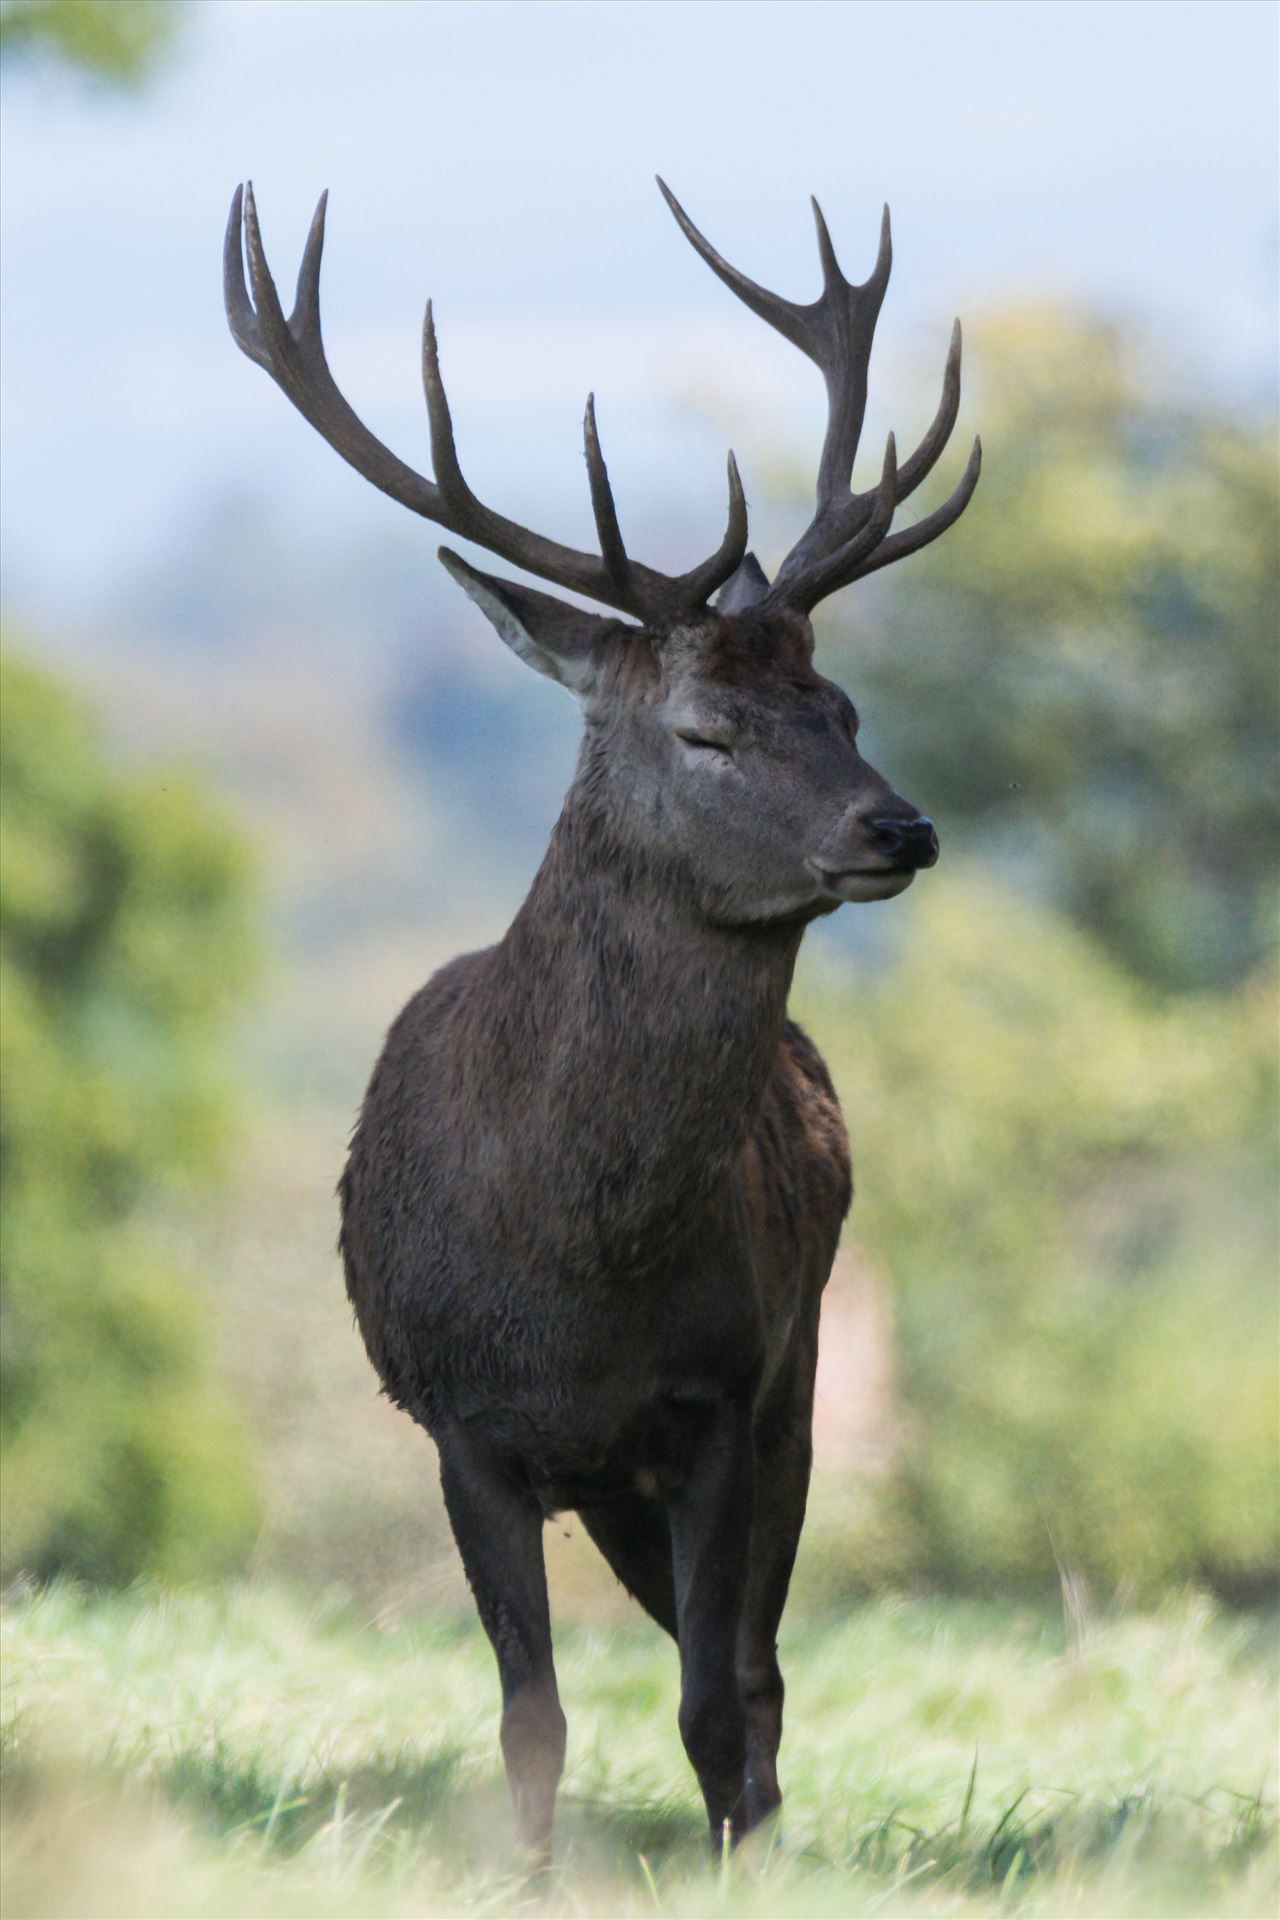 Stag Deer, taken at Studley Royal deer Patk - Taken in September 2017 at Studley Royal Park by AJ Stoves Photography